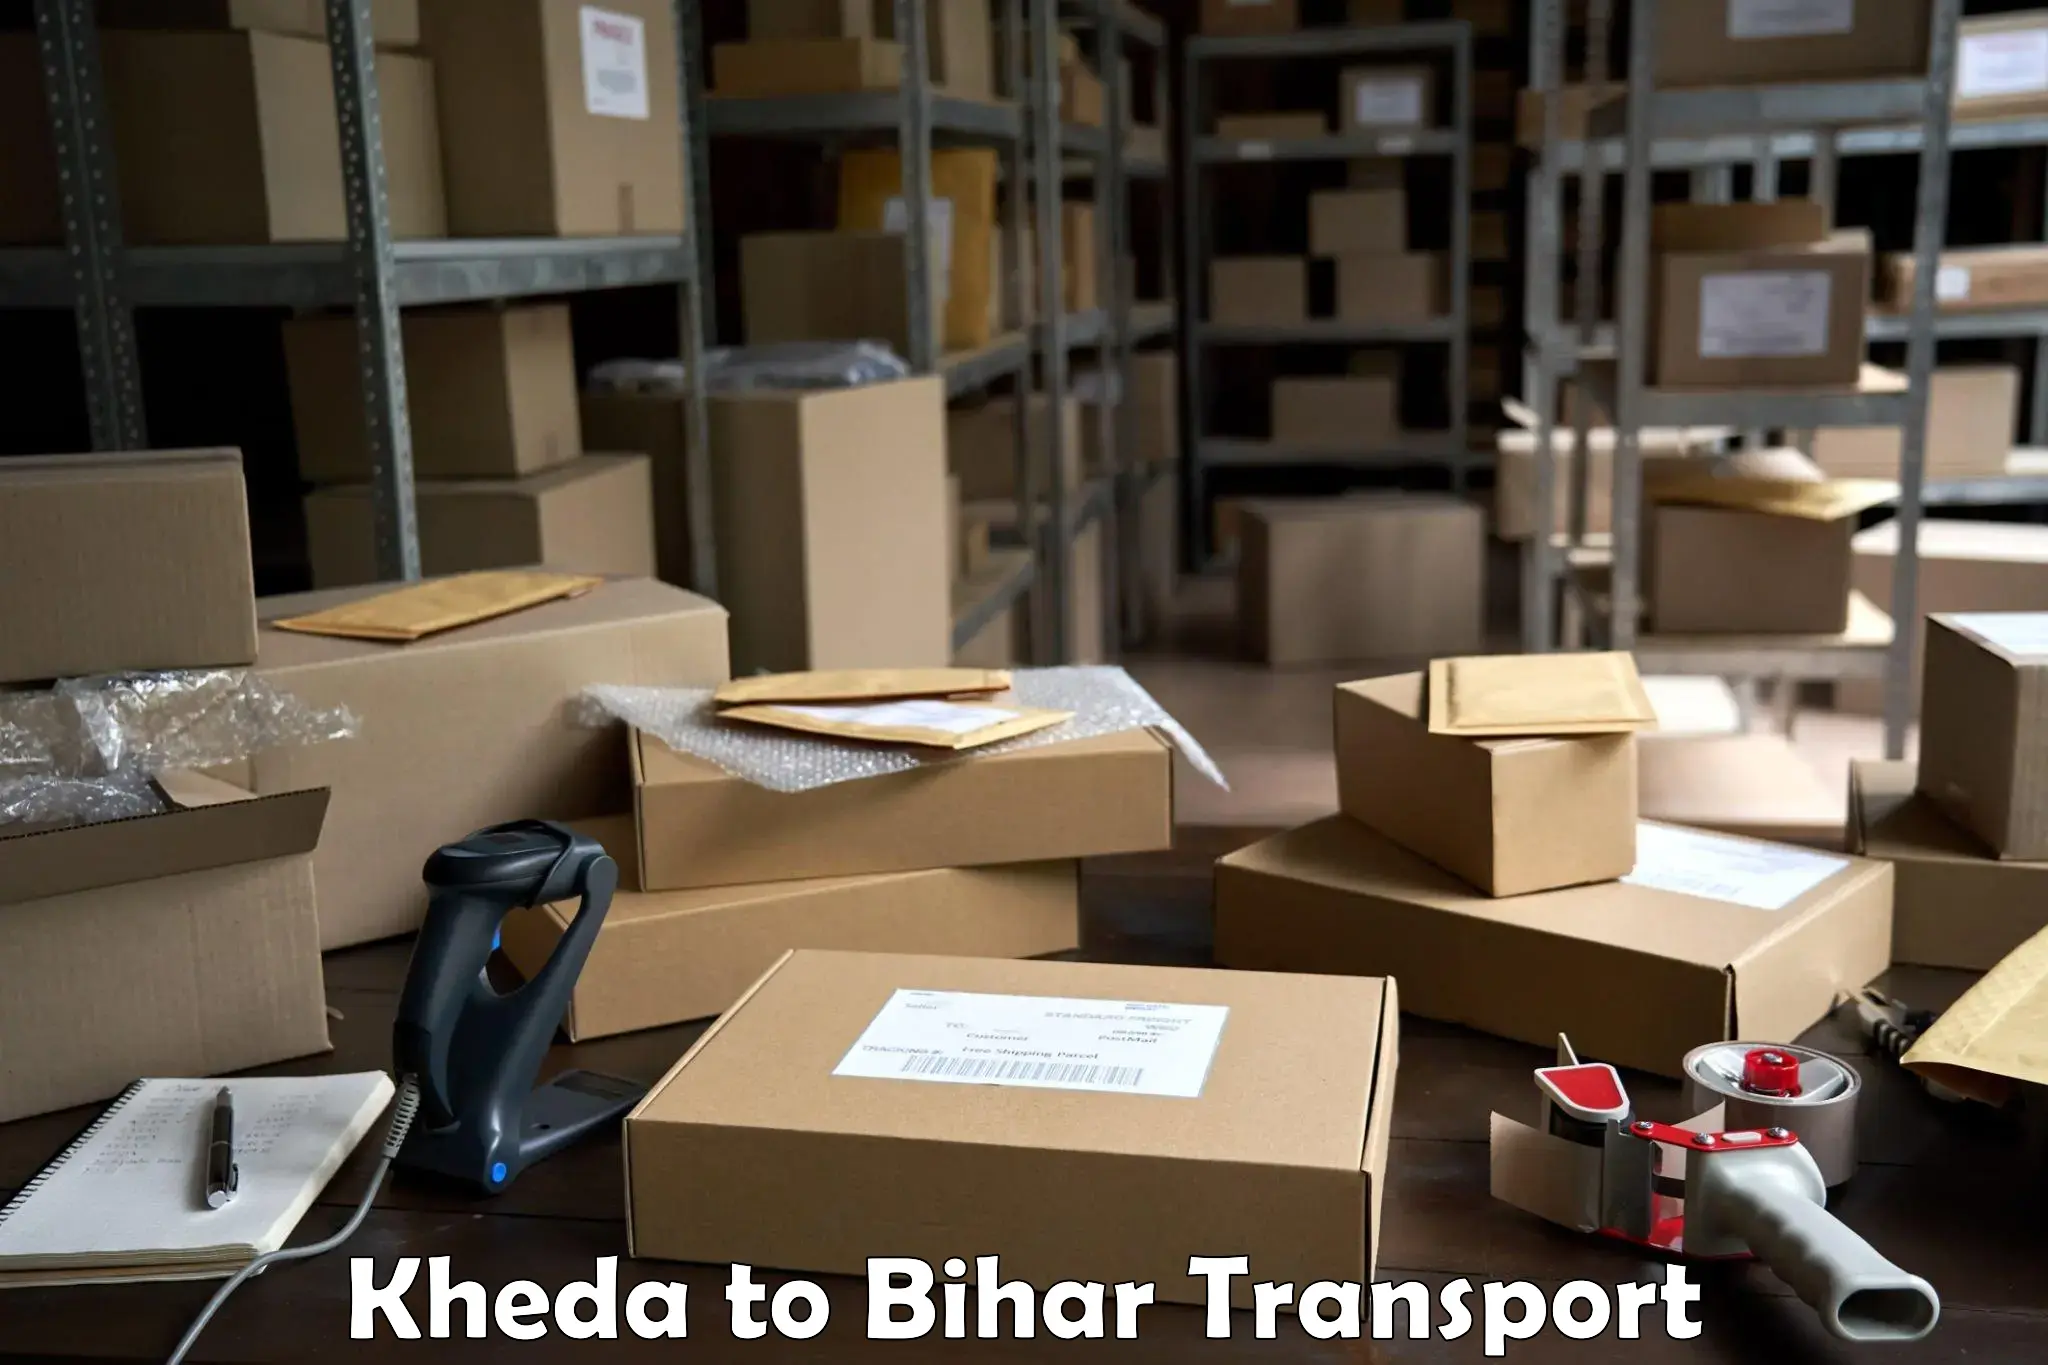 Furniture transport service Kheda to Pakribarwan